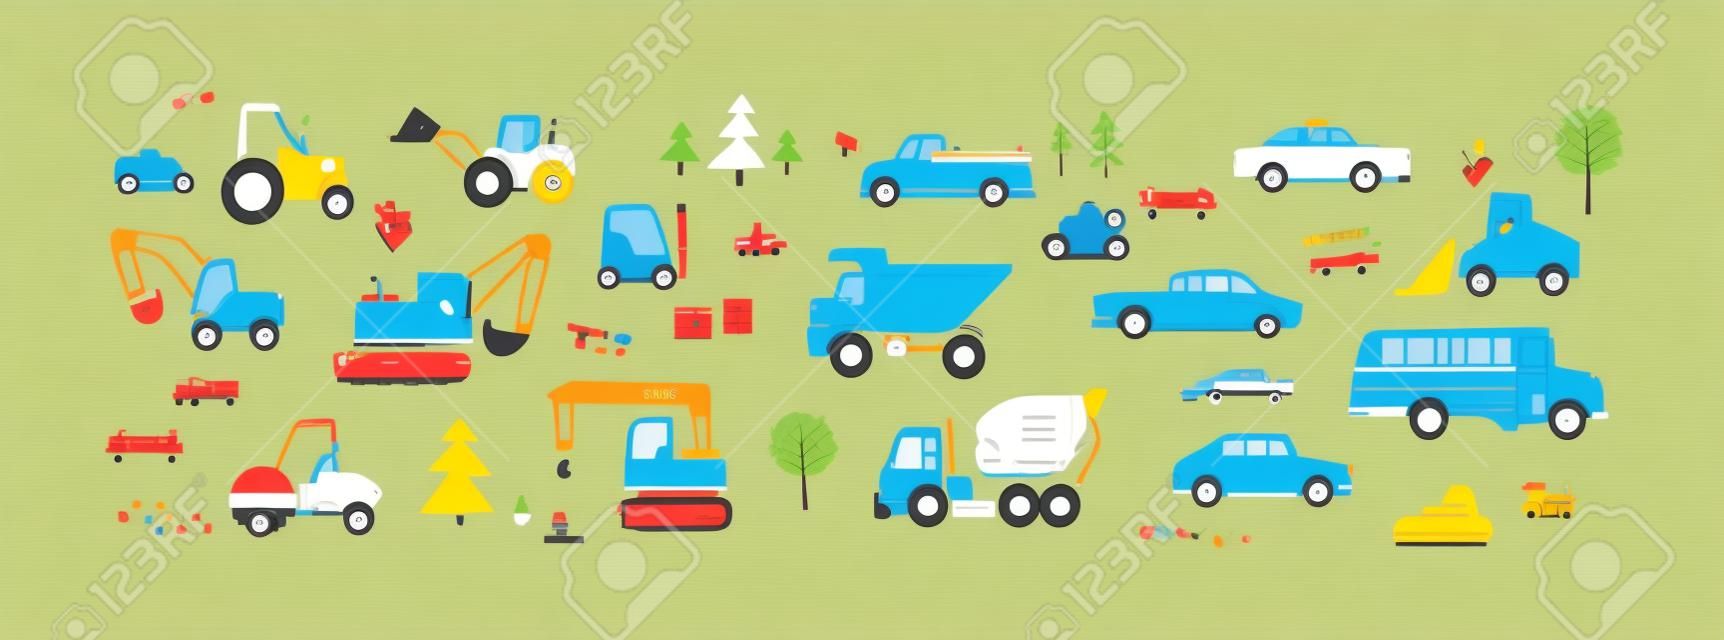 Lindos autos al estilo escandinavo. Conjunto infantil de juguetes de transporte por carretera. Tractor, autobús, camión volquete, excavadora, montacargas, taxi y camioneta. Ilustraciones vectoriales planas coloreadas aisladas sobre fondo blanco